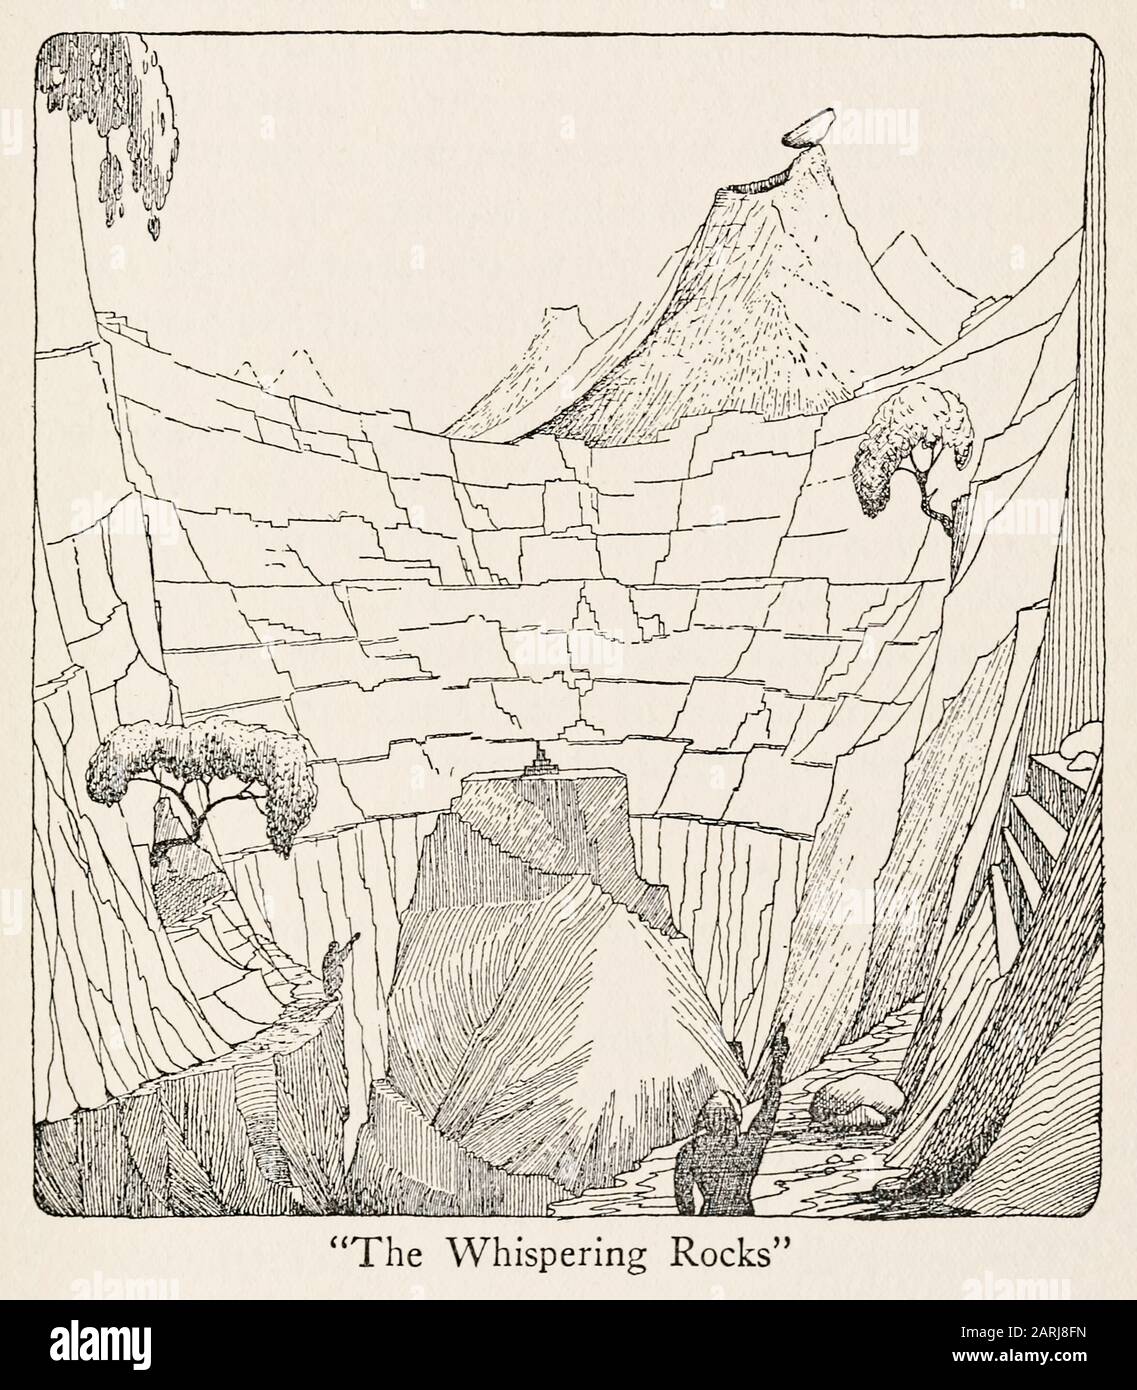 "The Whispering Rocks" Illustration from The Voyages of Doctor Dolittle (1922) geschrieben und illustriert von Hugh Lofting (1886-1947). Der zweite Roman über einen Arzt, der mit Tieren sprechen kann. Weitere Informationen finden Sie weiter unten. Stockfoto